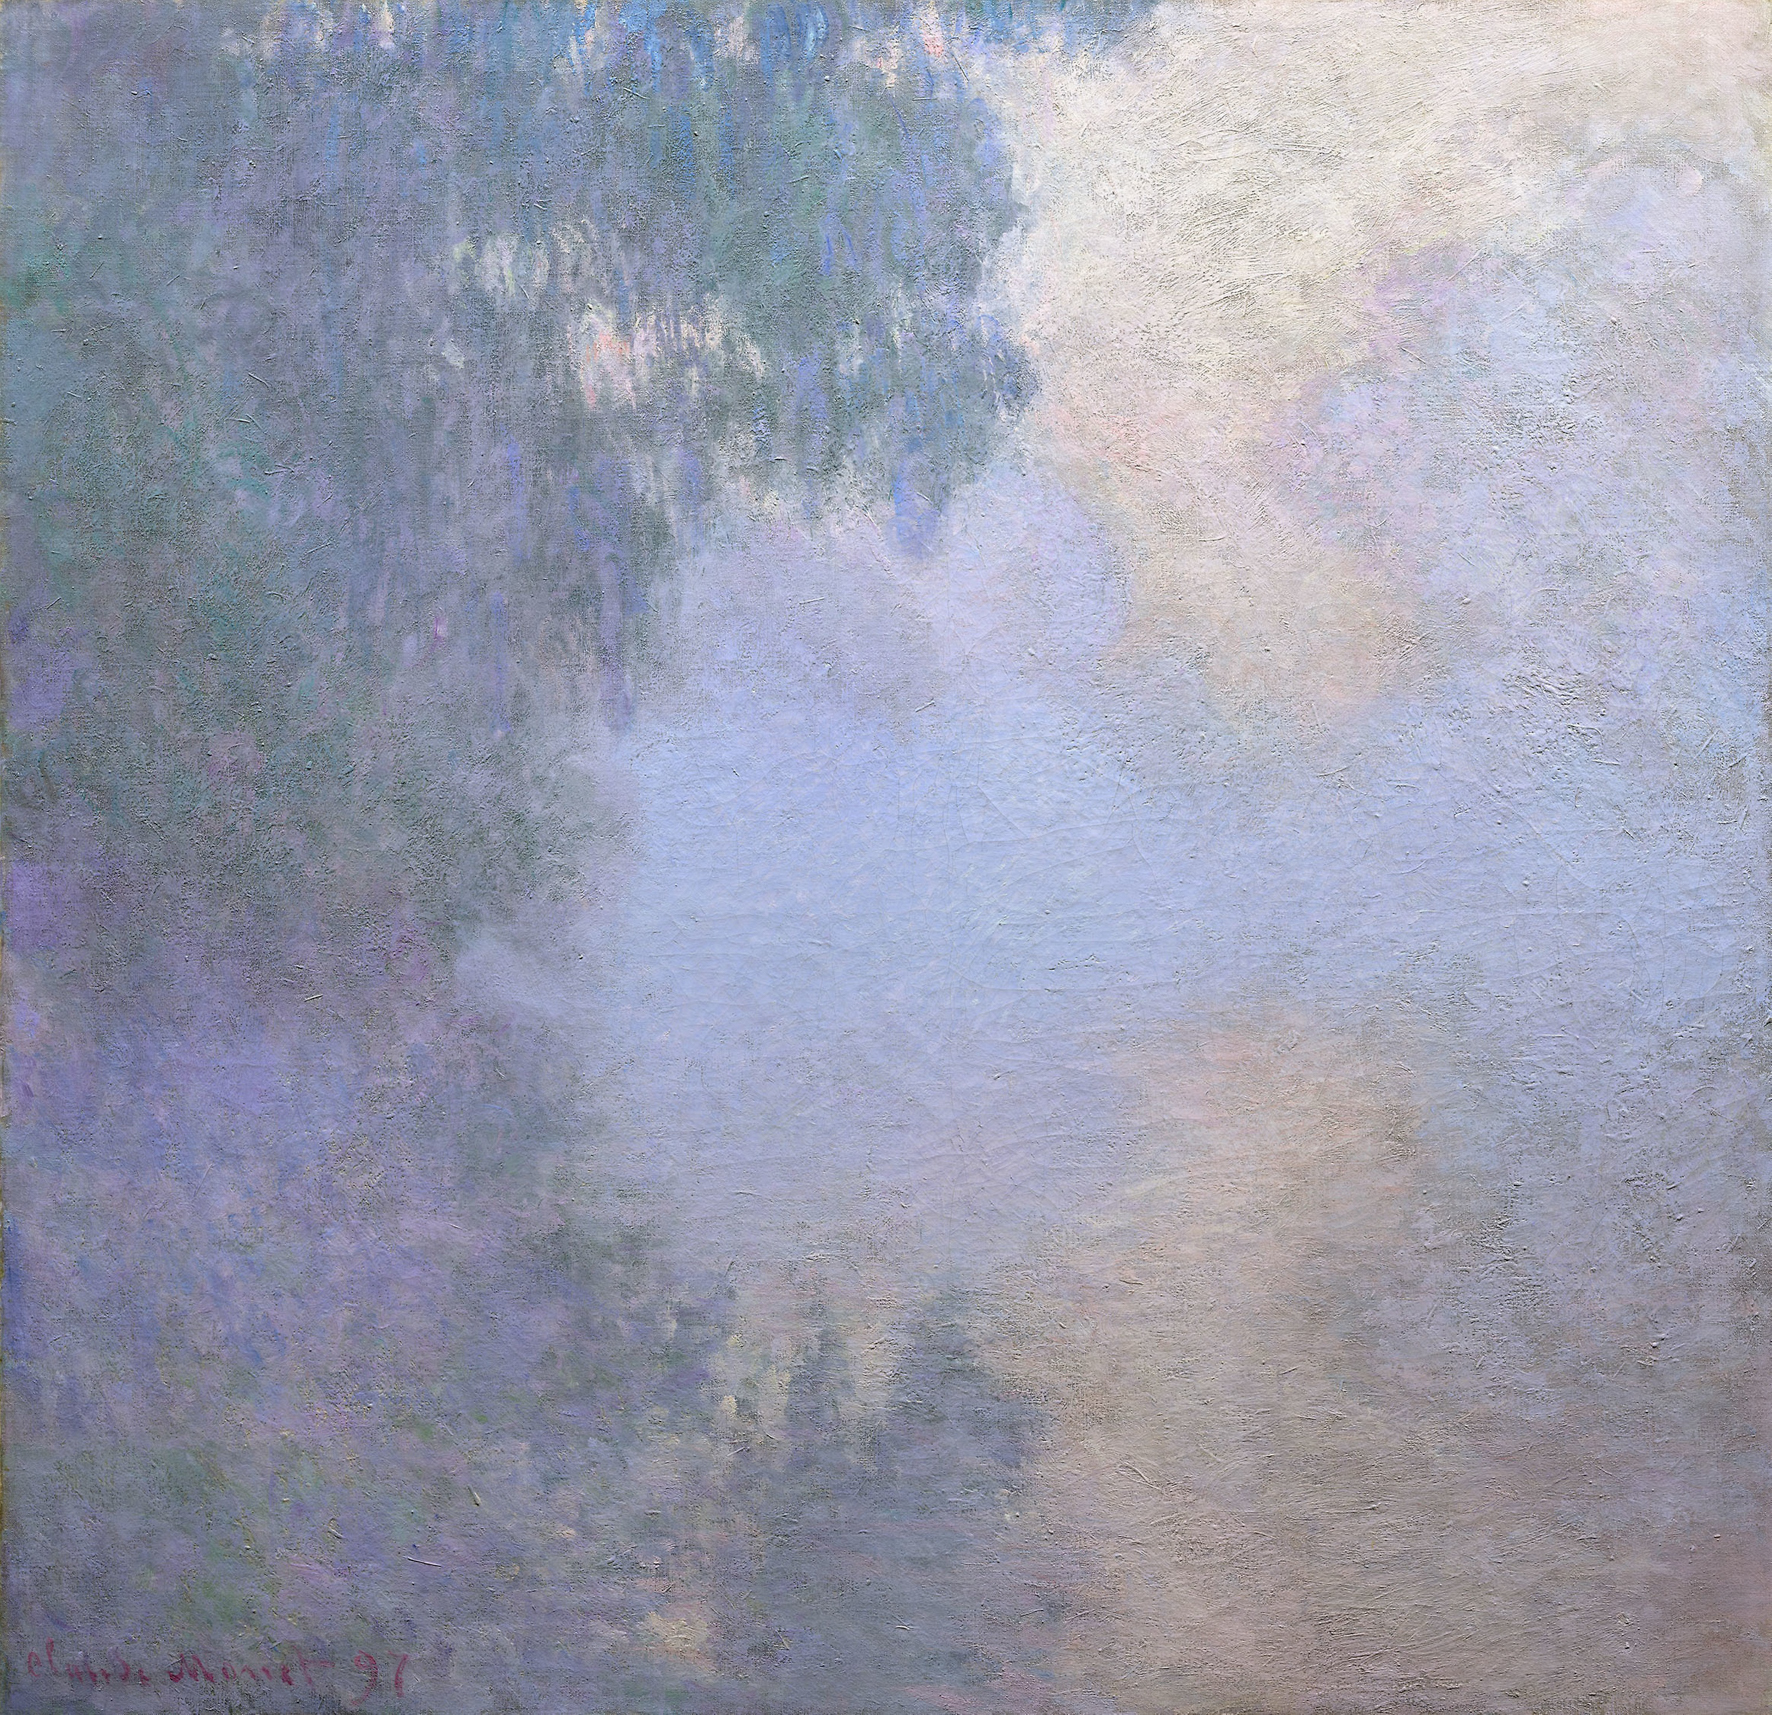 Bild von Claude Monet, Arm der Seine bei Giverny im Nebel (1897)